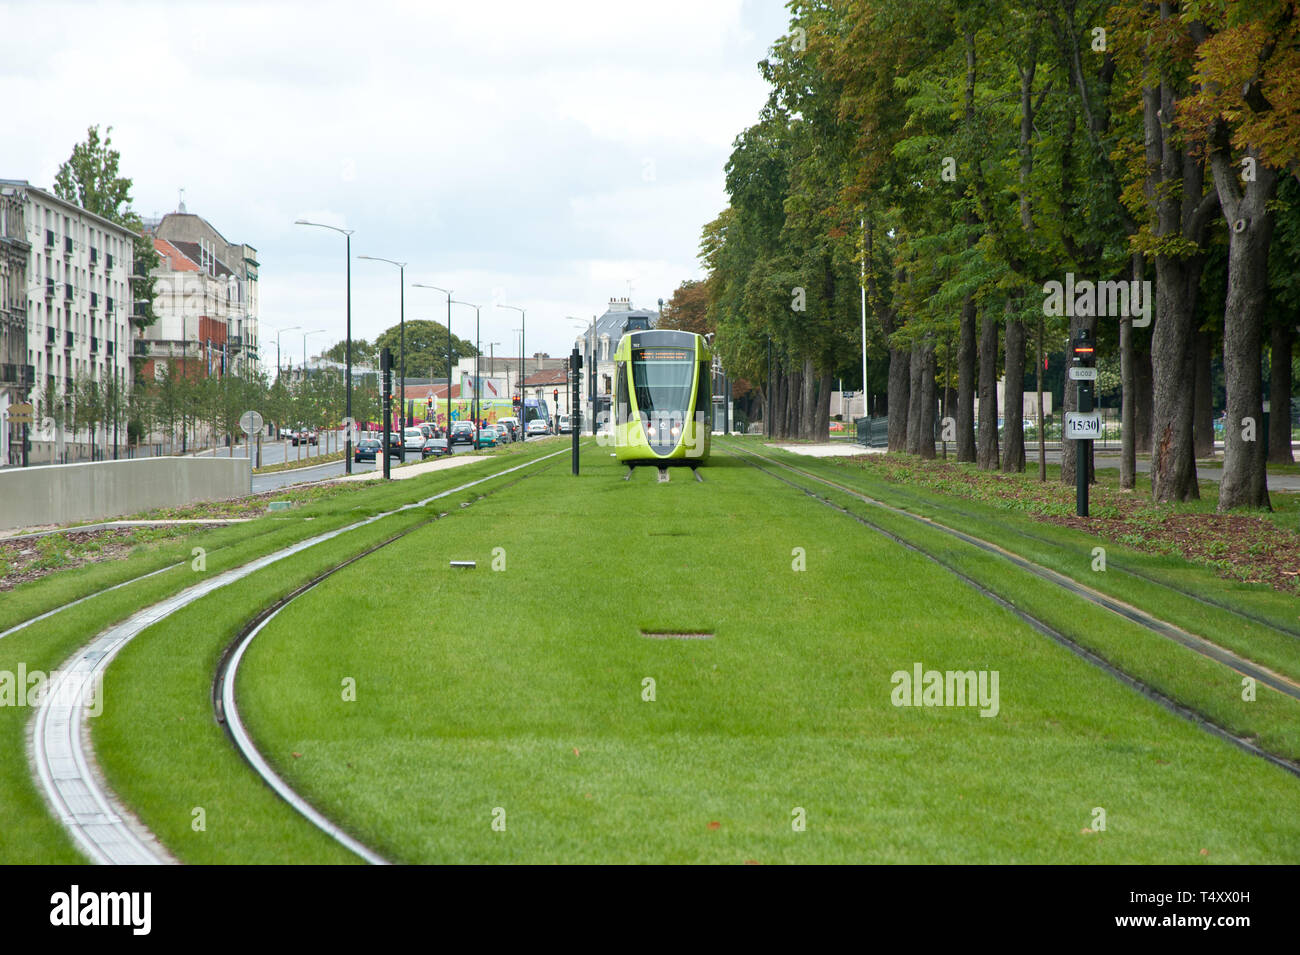 Reims, moderne Straßenbahn - Reims, modern Tramway Stock Photo